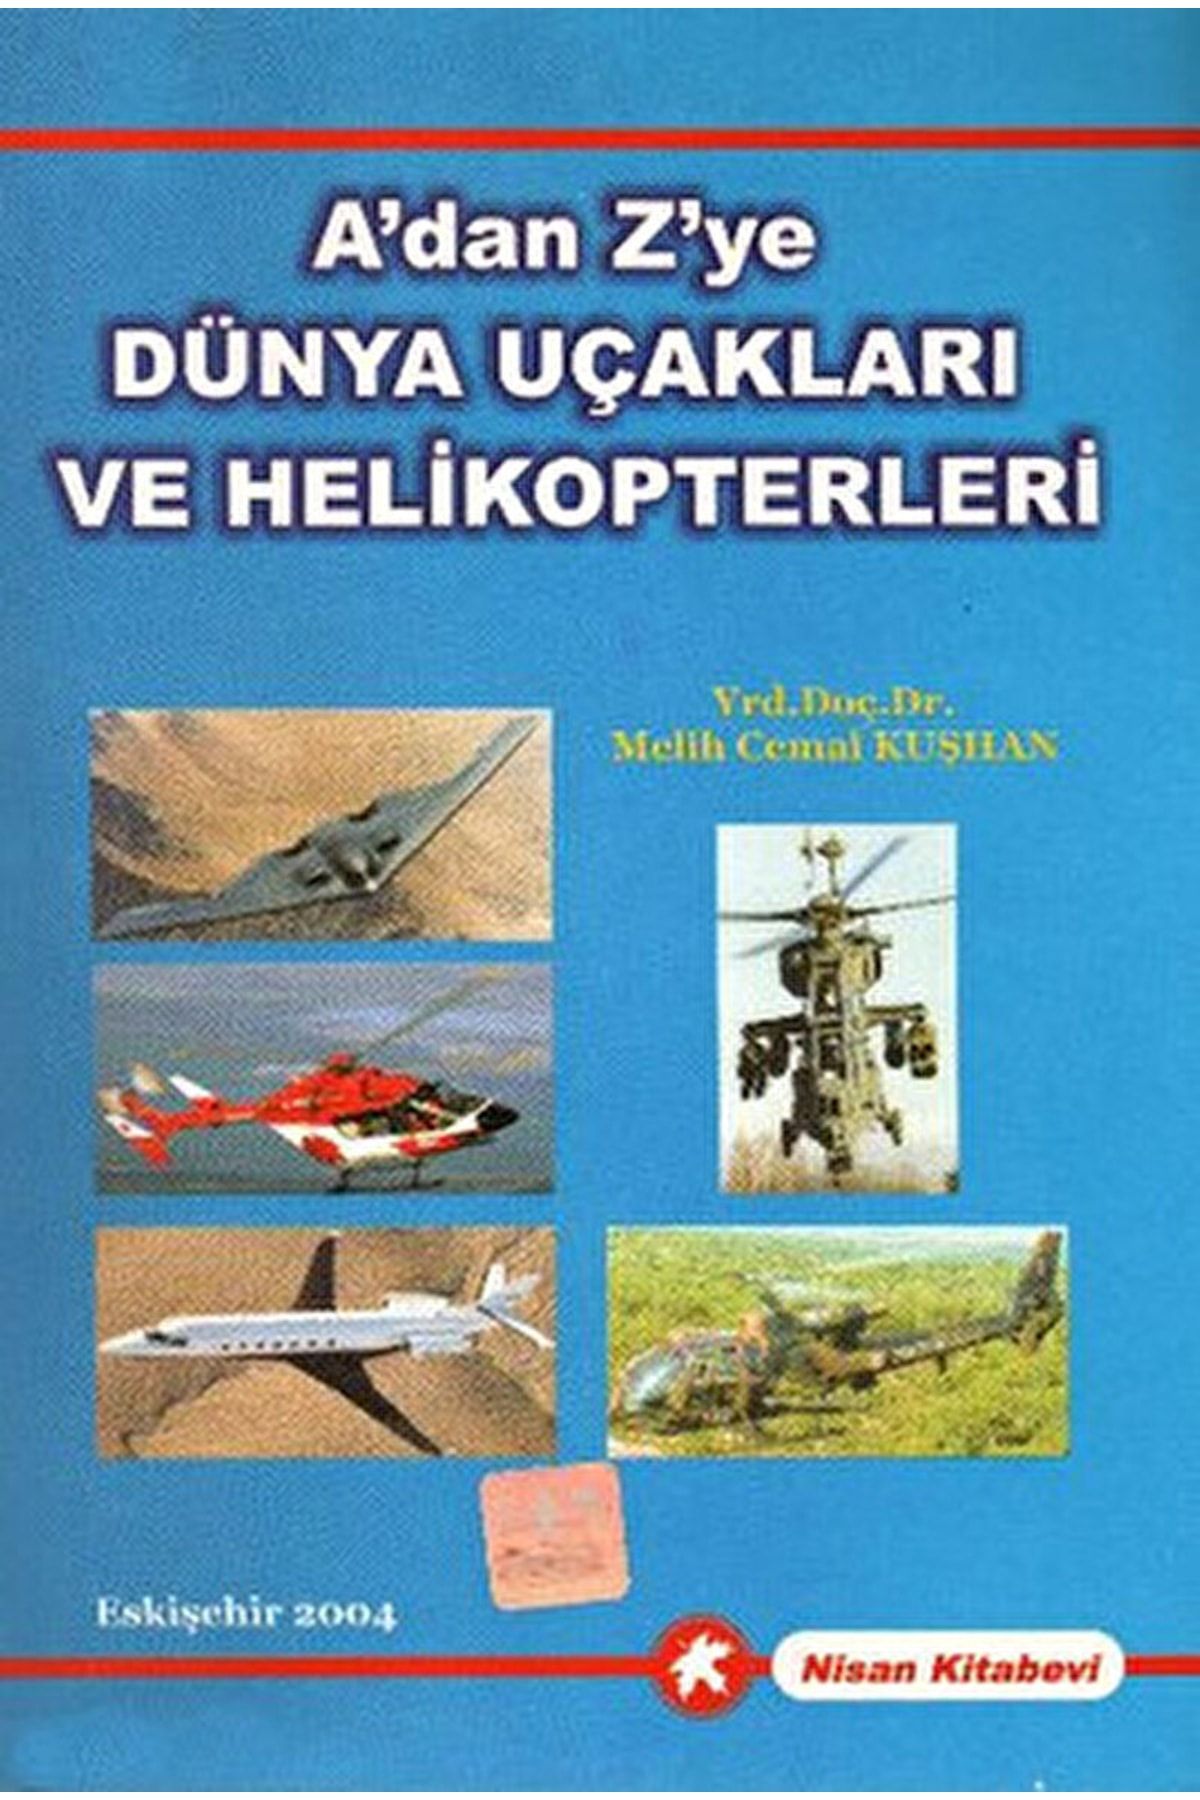 Nisan Kitabevi A'dan Z'ye Dünya Uçakları Ve Helikopterleri / Melih Cemal Kuşhan / / 9789756428009